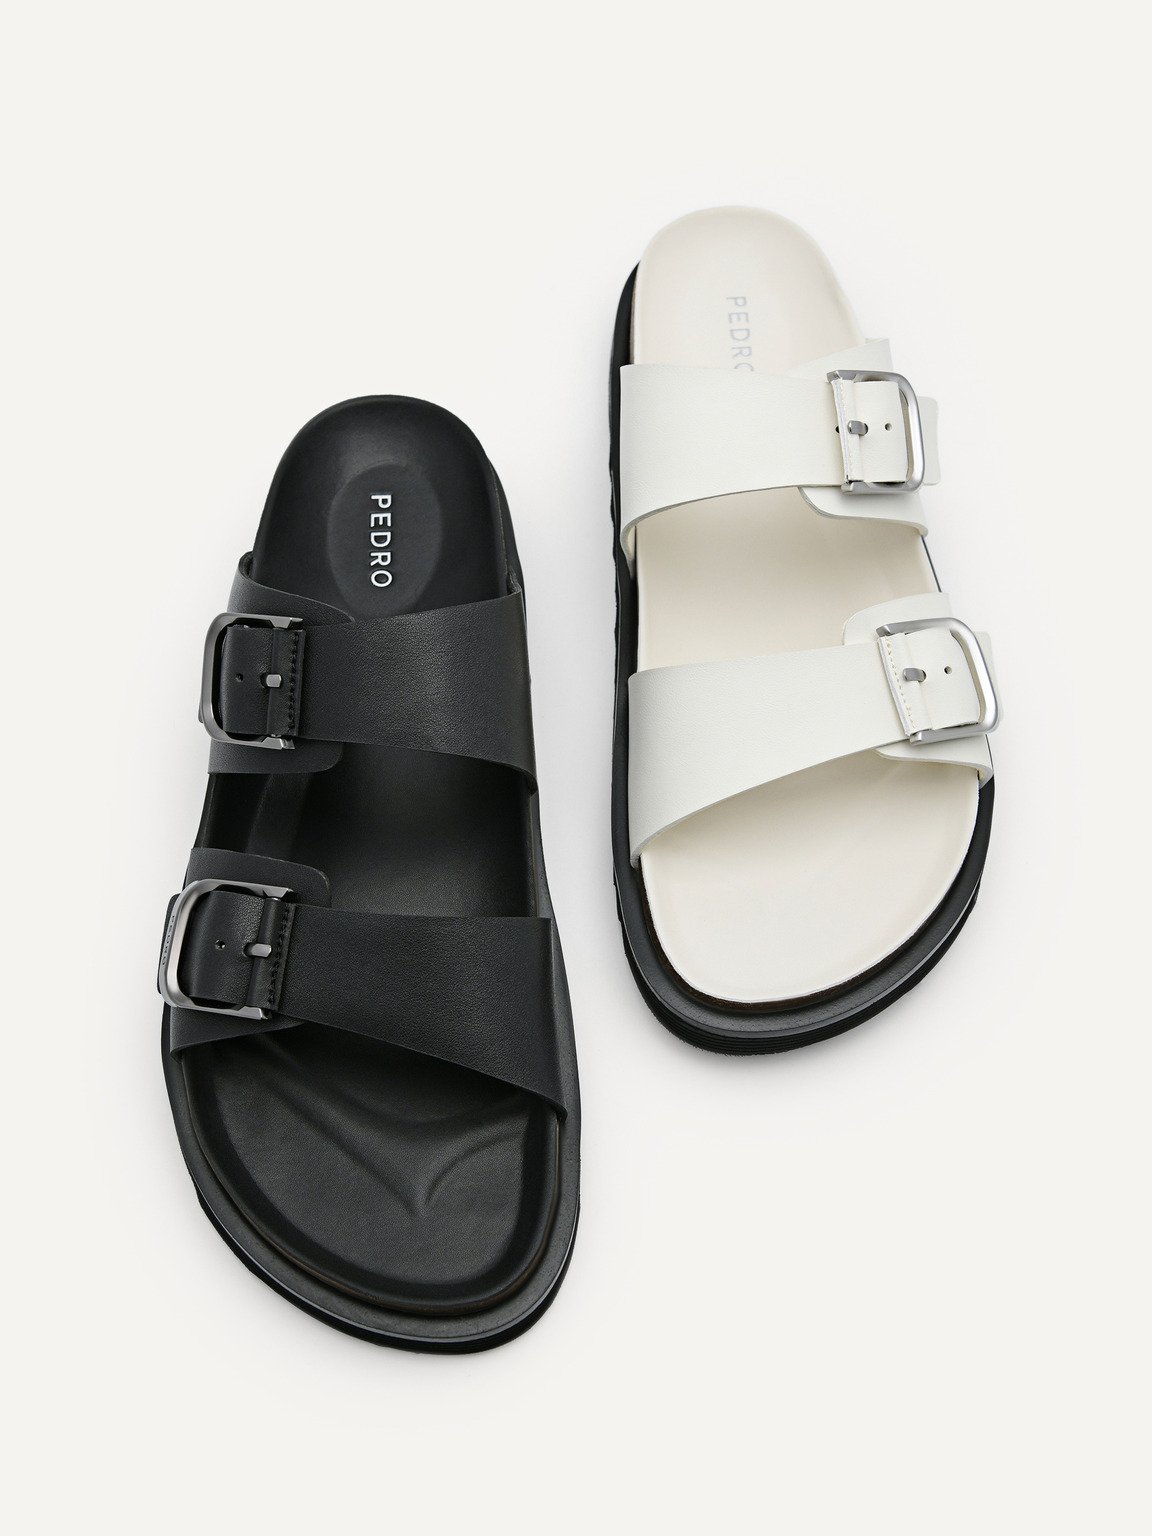 Men's Helix Slide Sandals, White